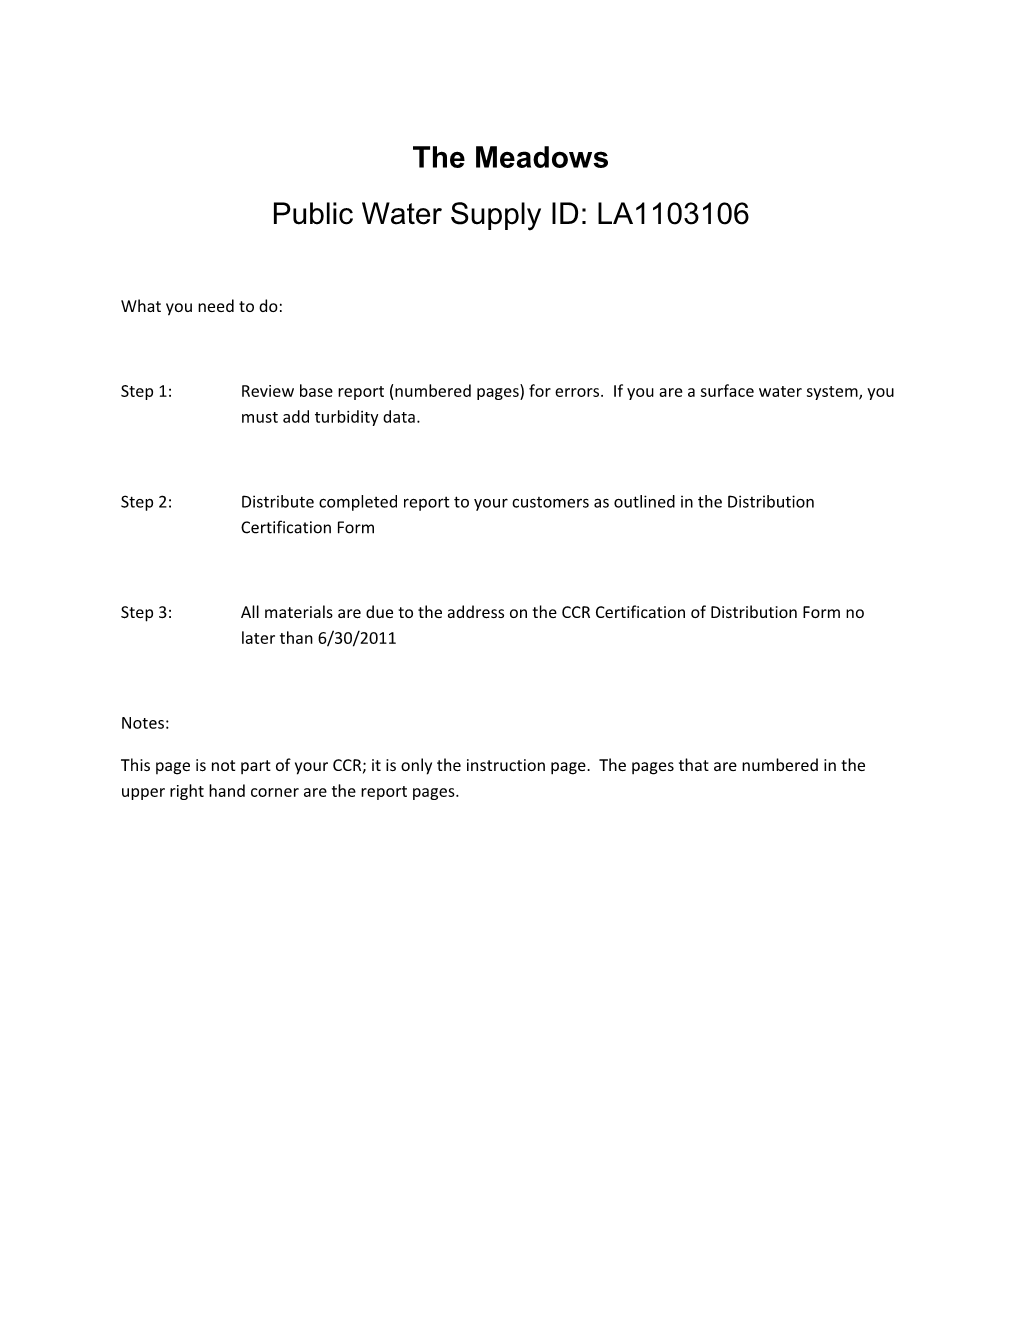 Public Water Supply ID: LA1103106